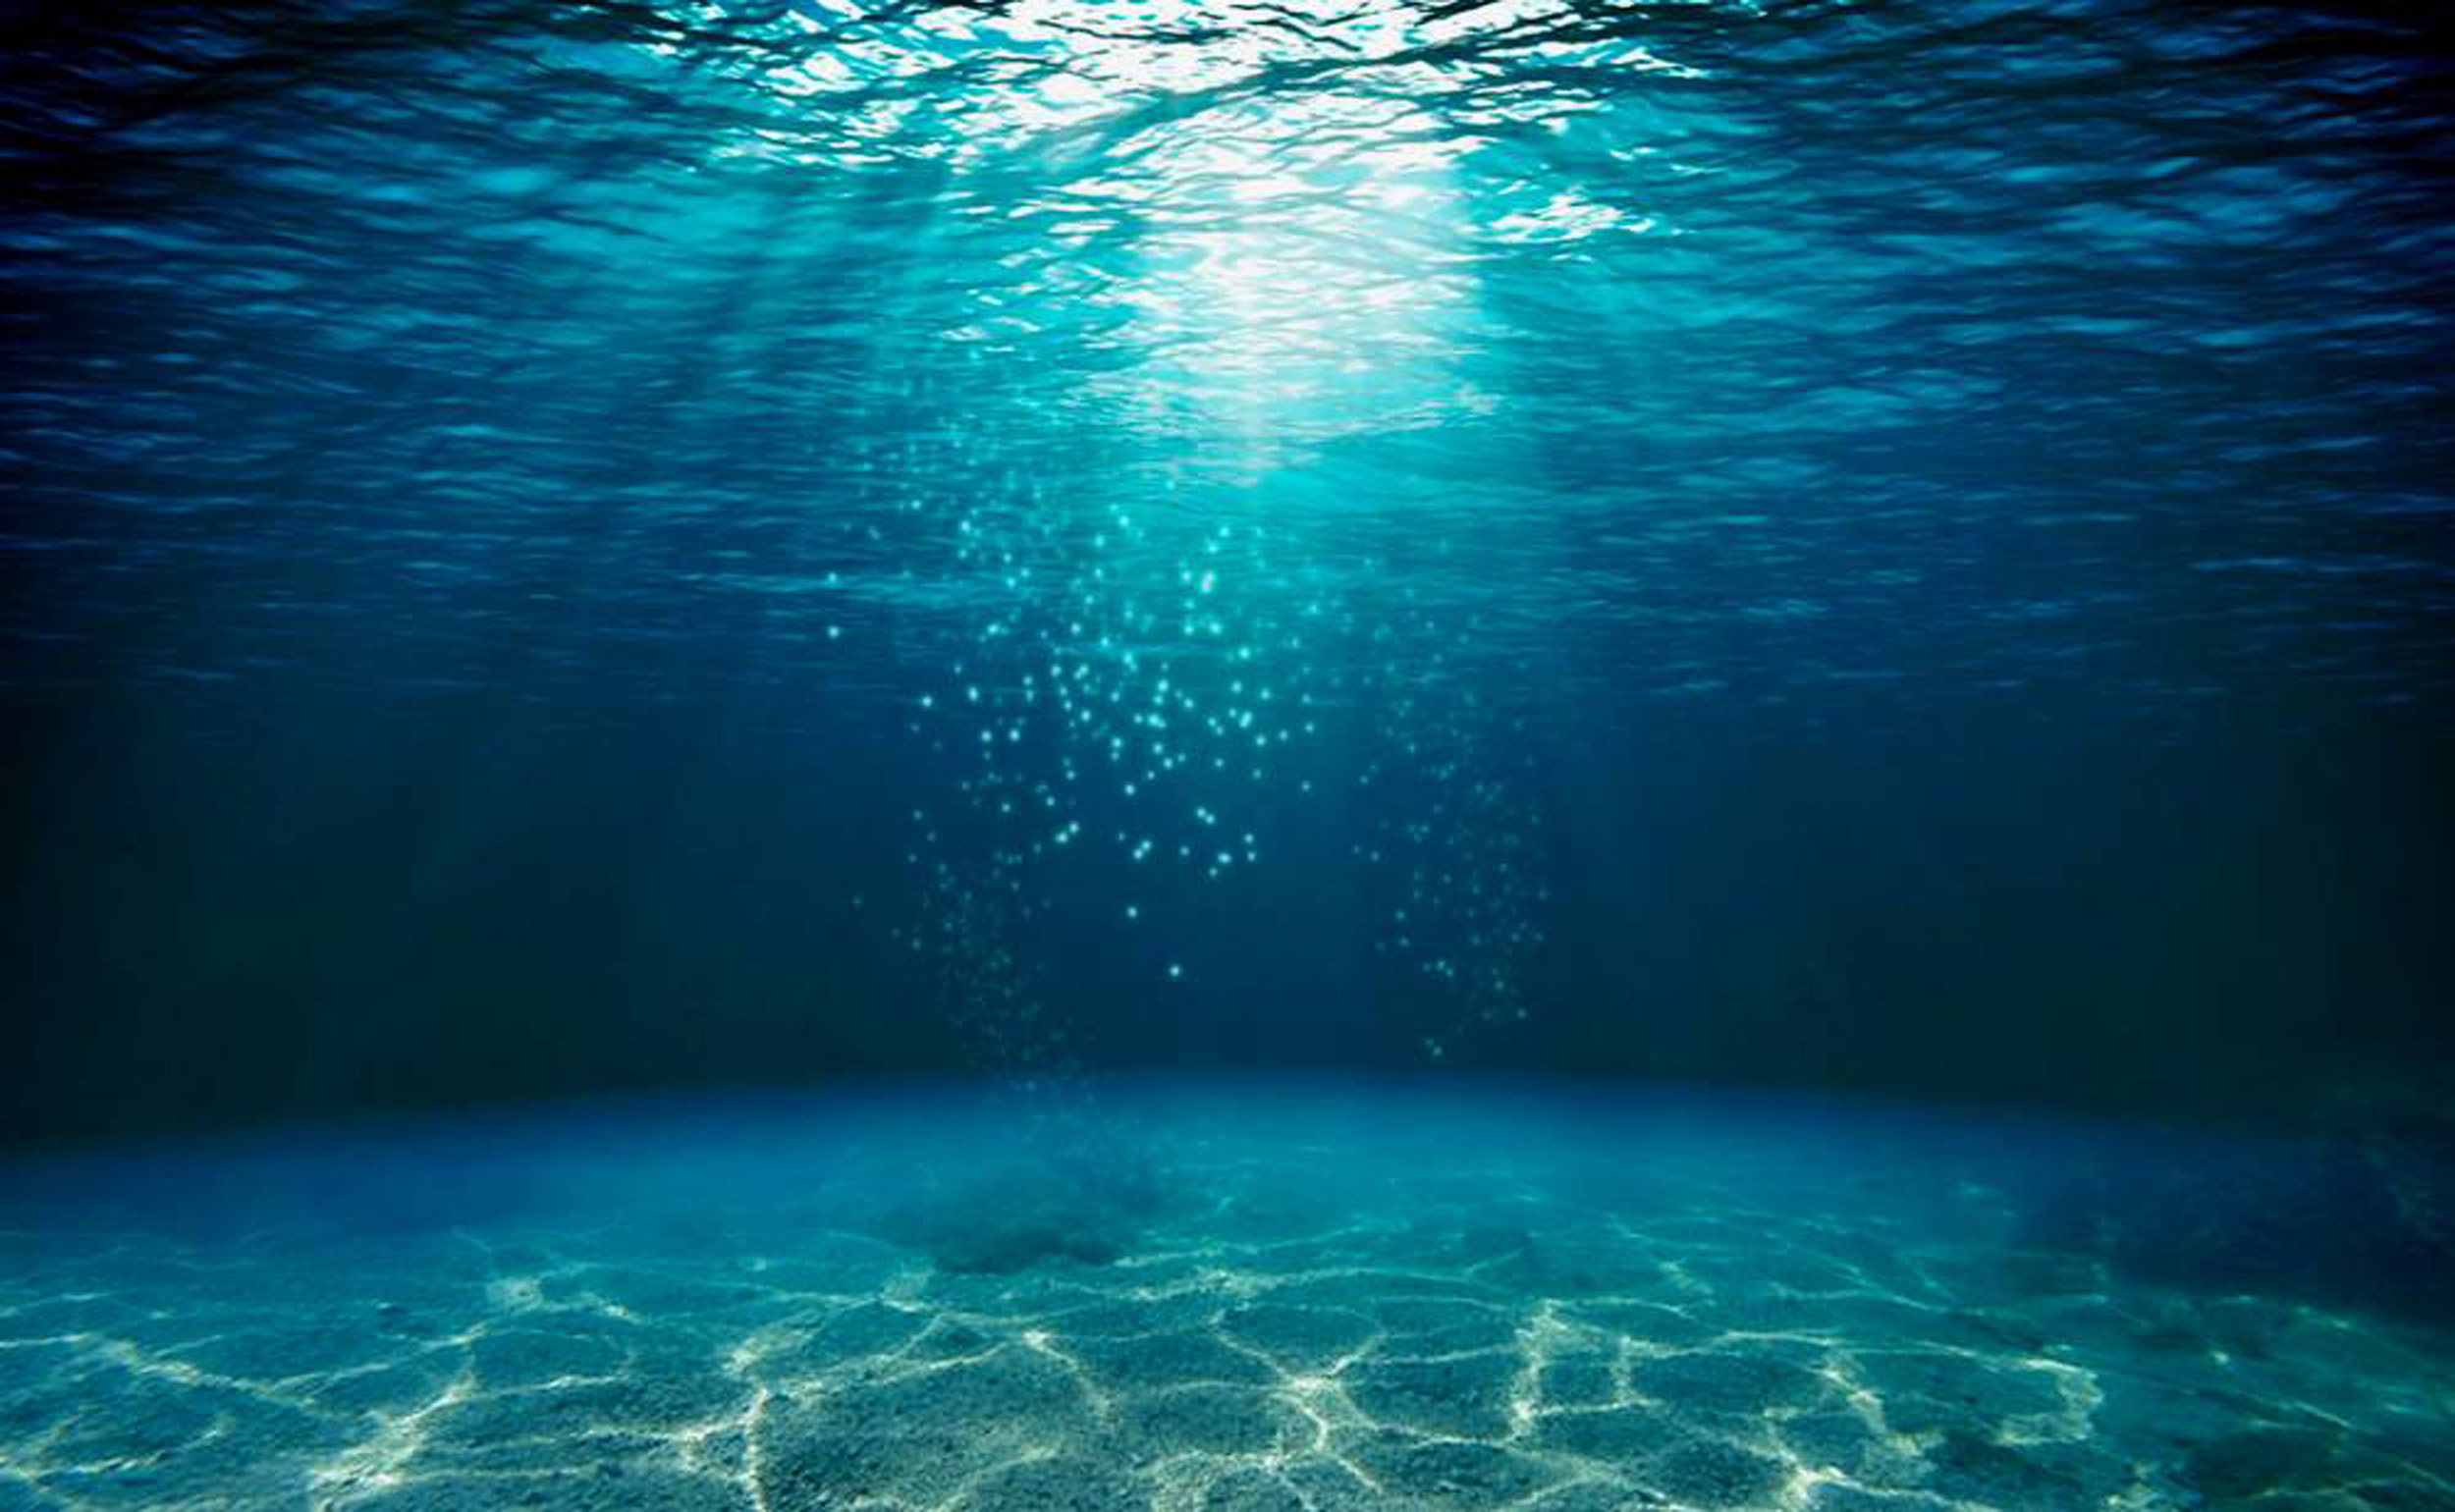 Deep Ocean Background